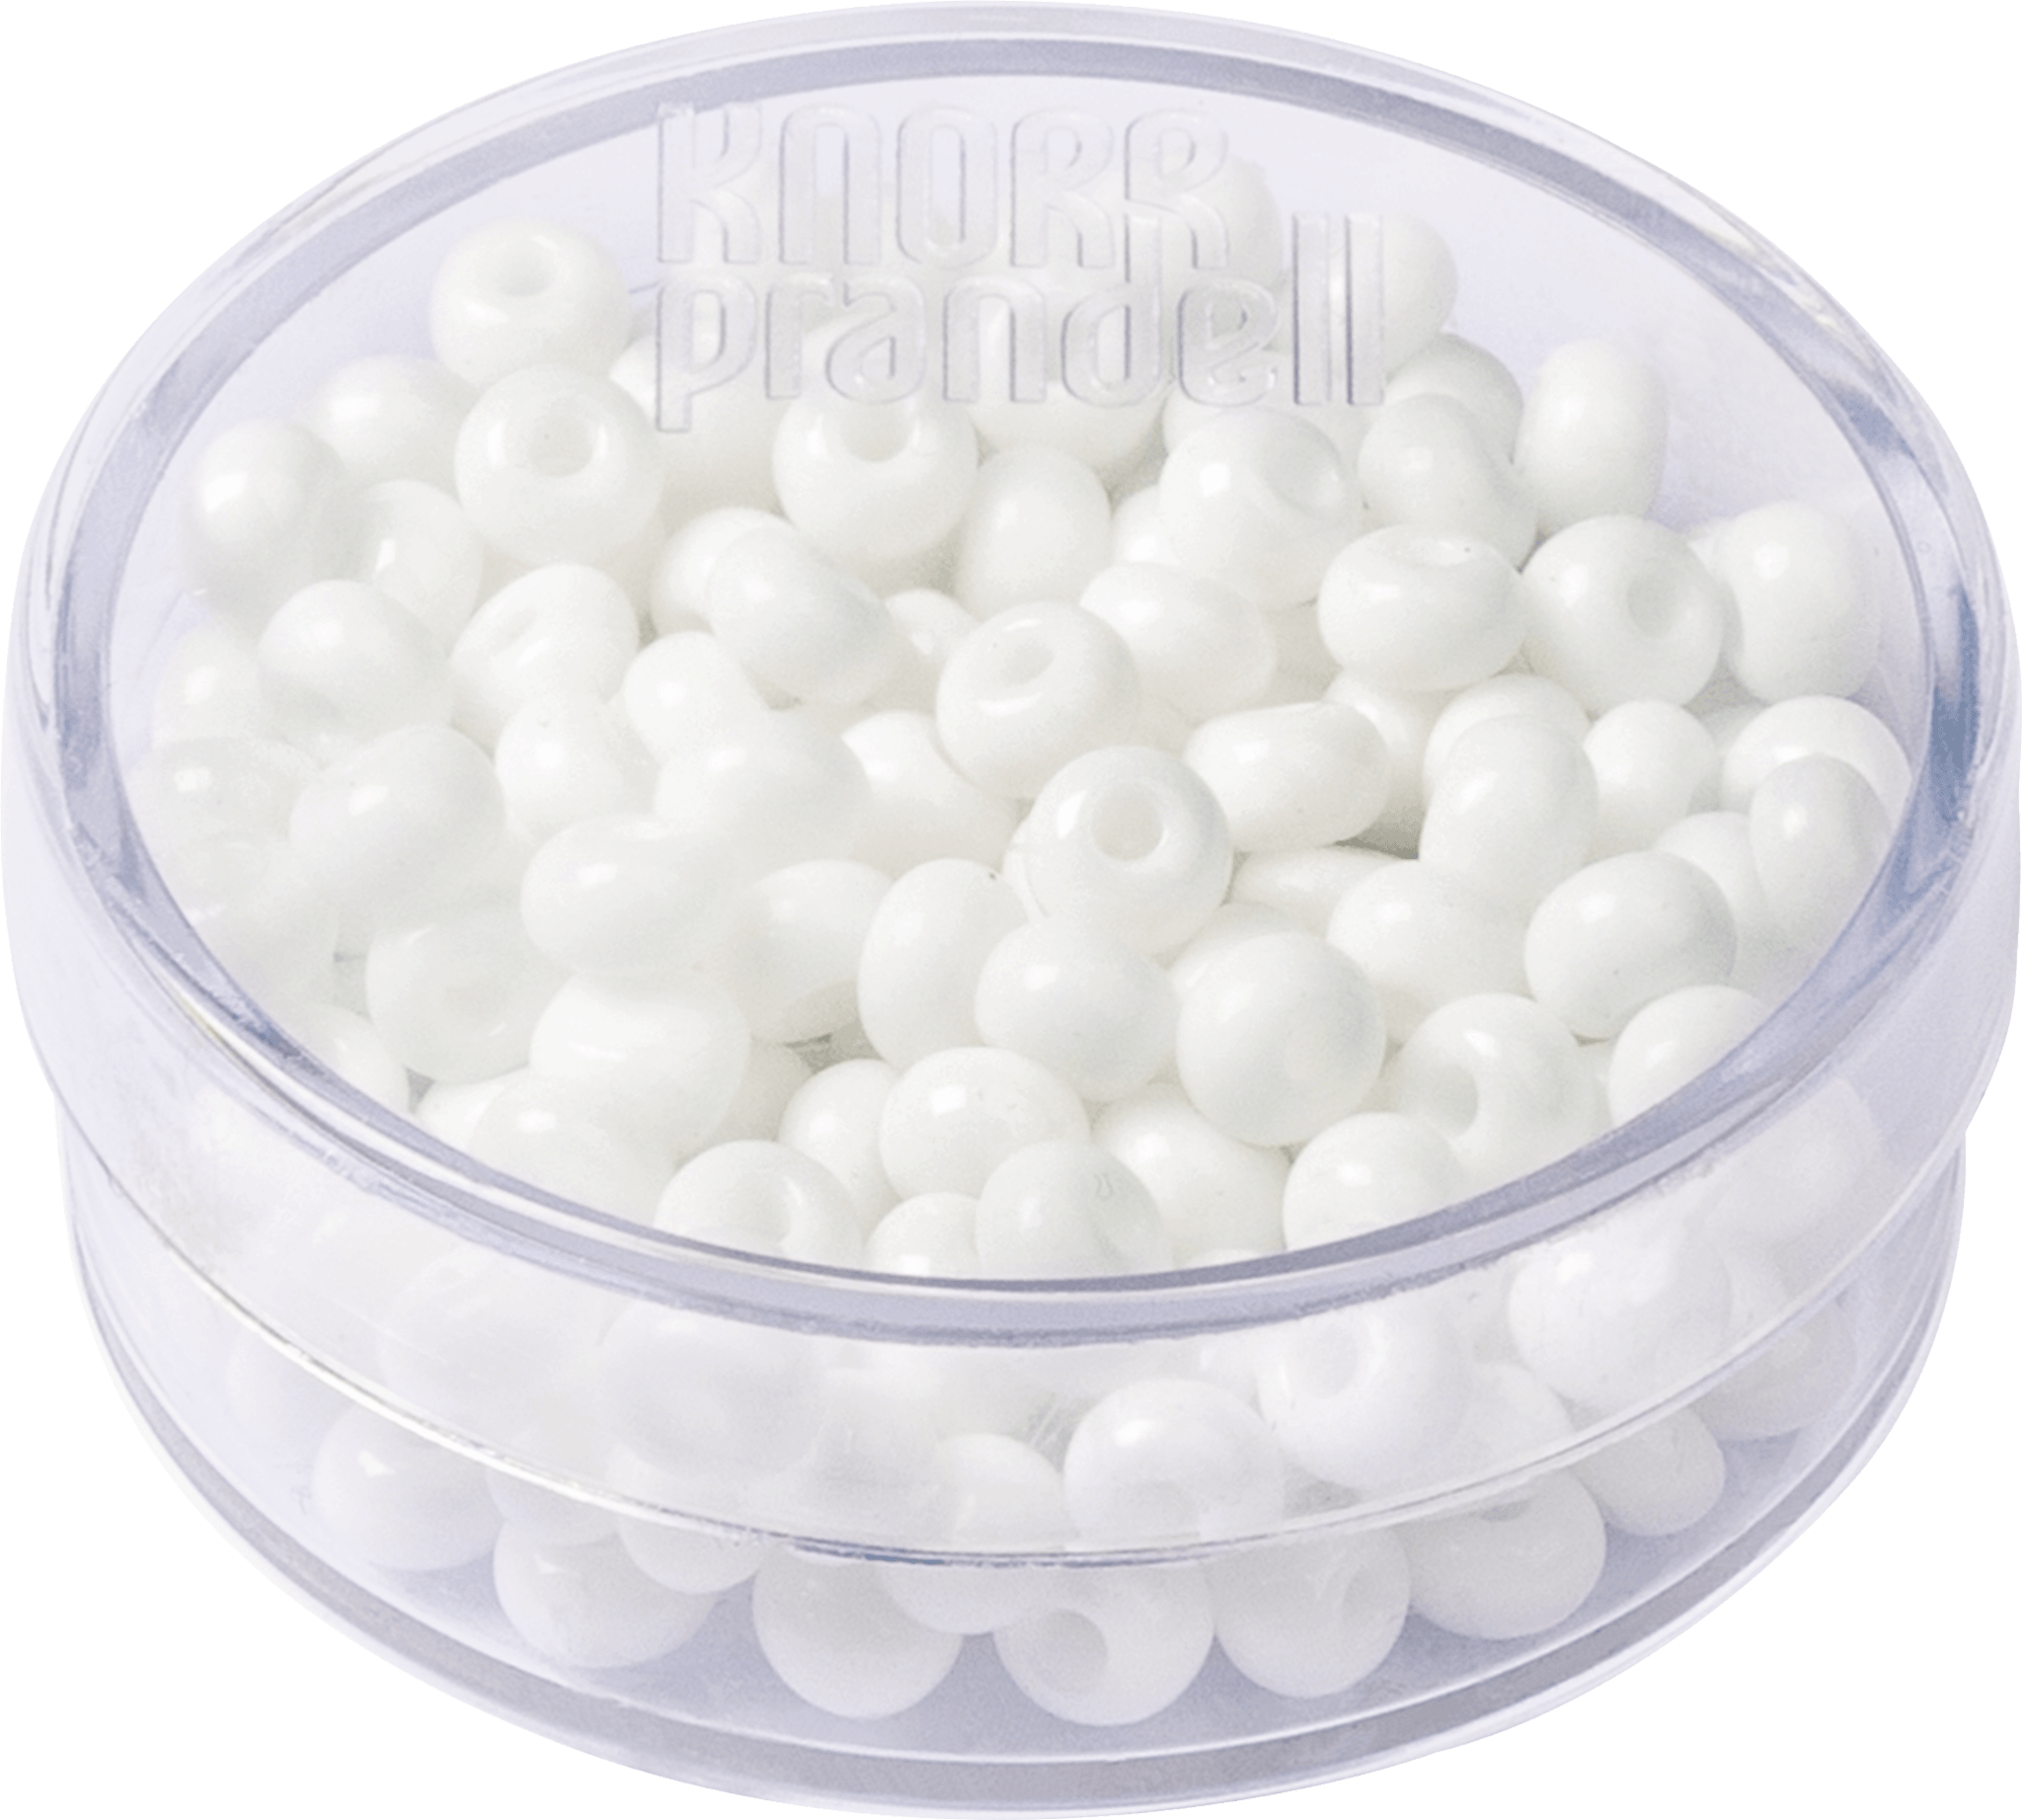 Rocailles Perlen - weiß